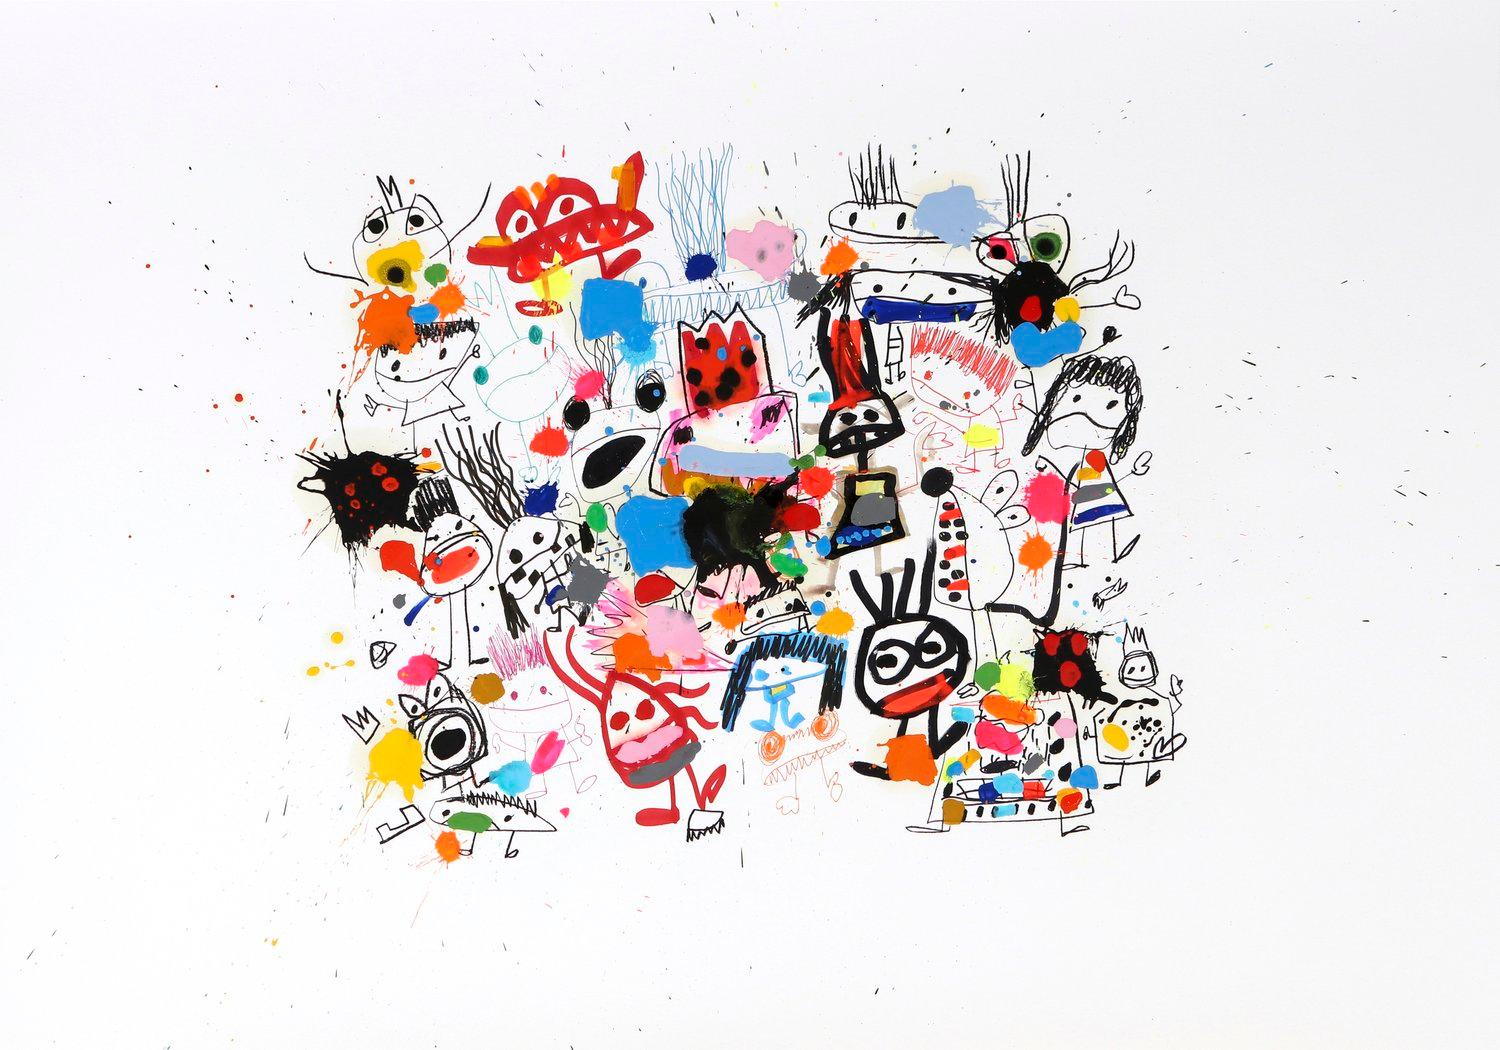 Der 1971 geborene spanische Künstler Xavi Carbonell malt als Erwachsener aktiv wie ein Kind und lässt alle seine Werke "unbetitelt", damit jeder Betrachter seine eigene Geschichte erschaffen kann.  Das Ergebnis ist ein unterhaltsames, frisches und